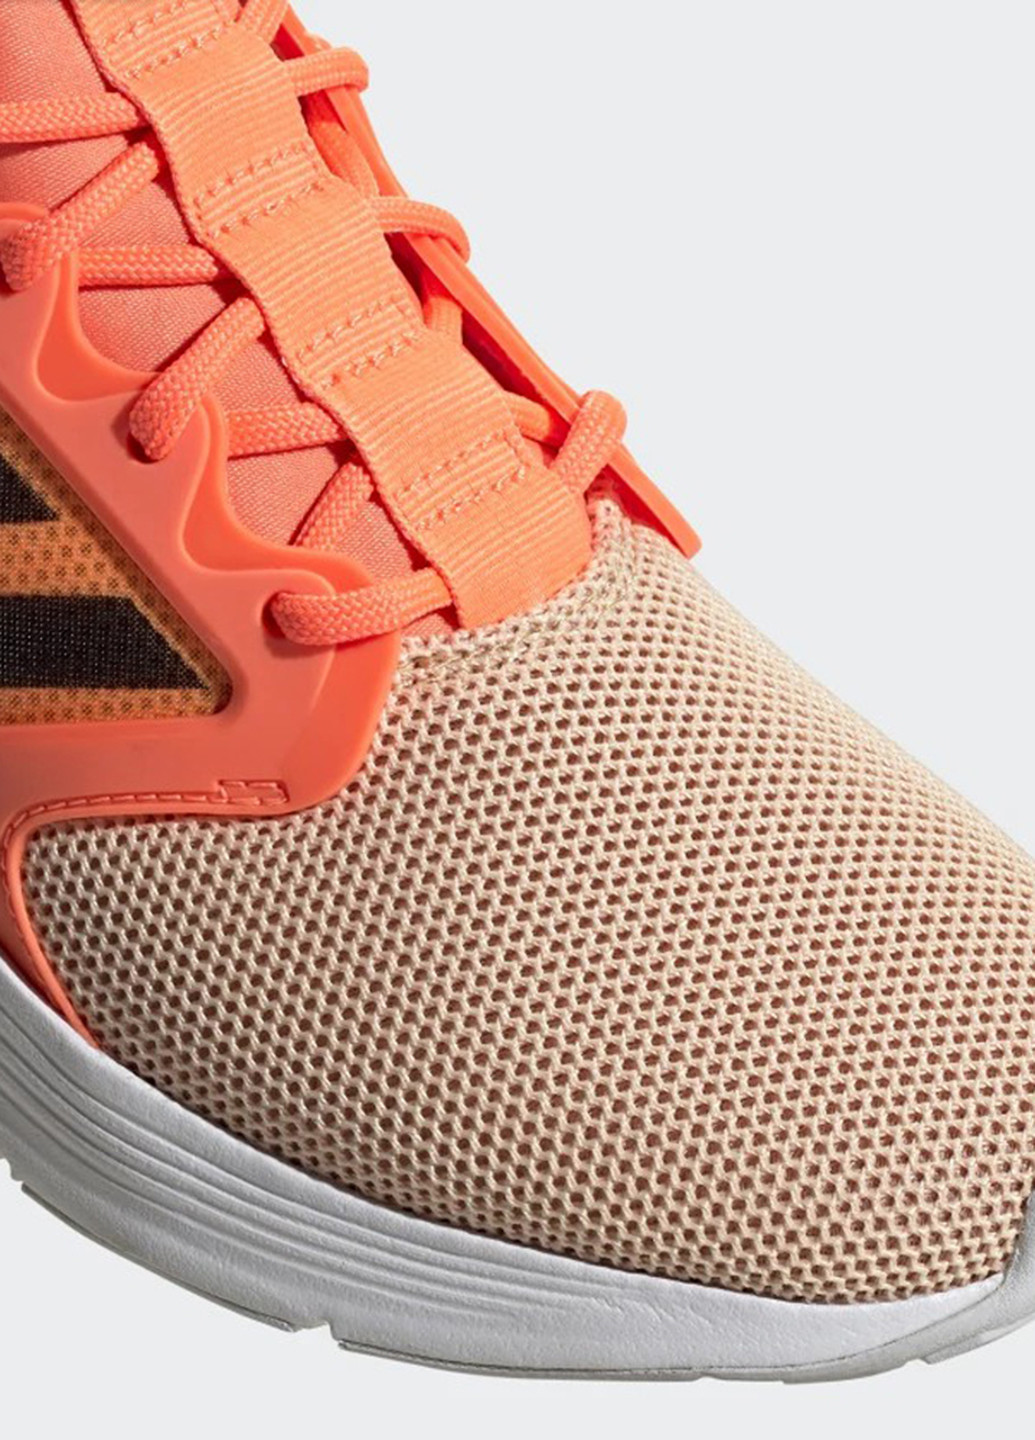 Оранжевые всесезонные кроссовки adidas Energyfalcon